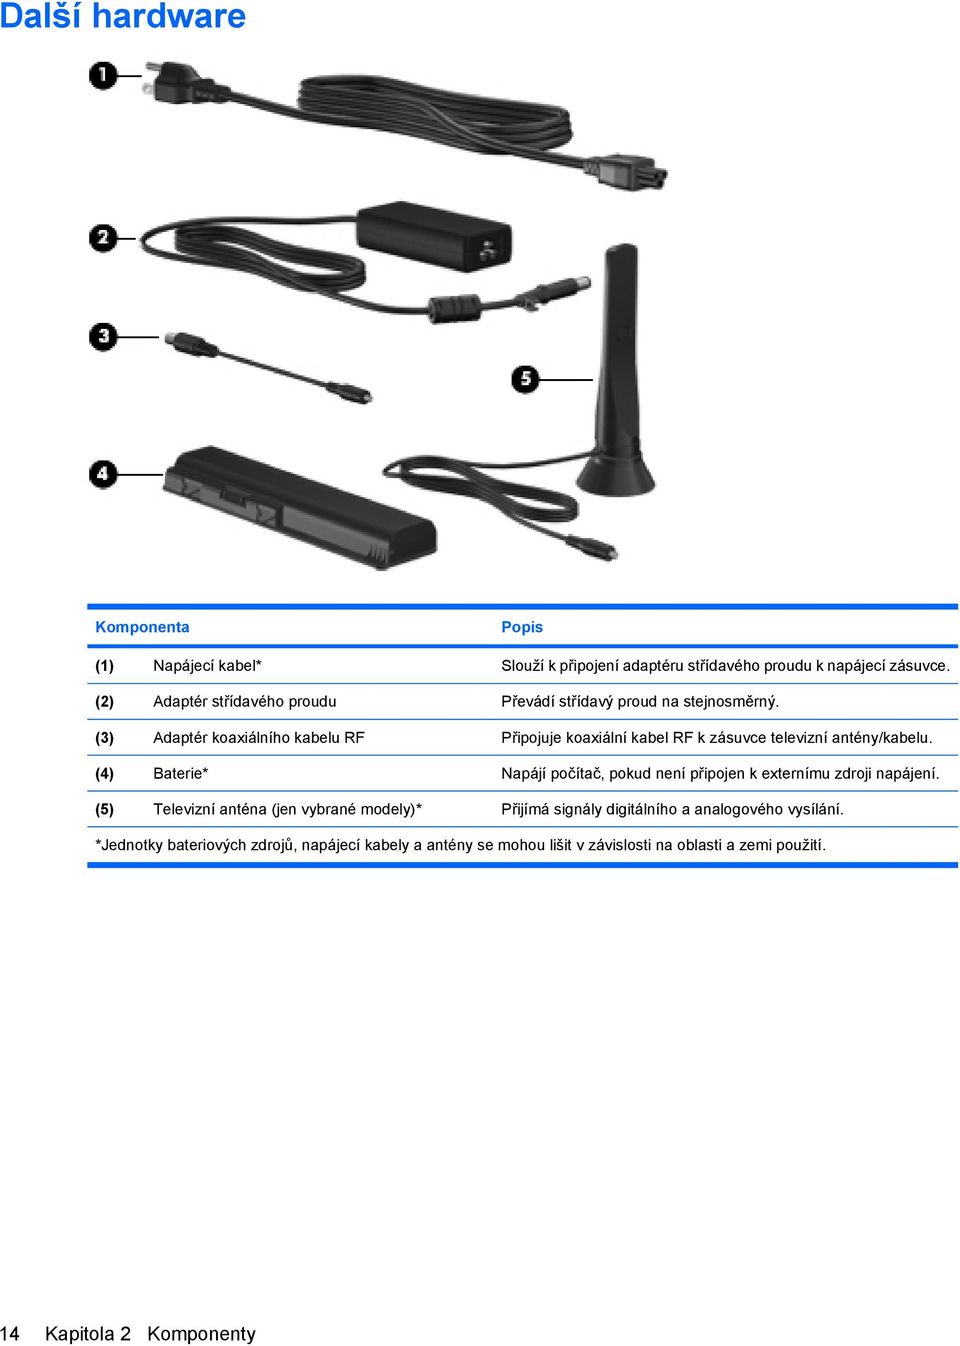 (3) Adaptér koaxiálního kabelu RF Připojuje koaxiální kabel RF k zásuvce televizní antény/kabelu.